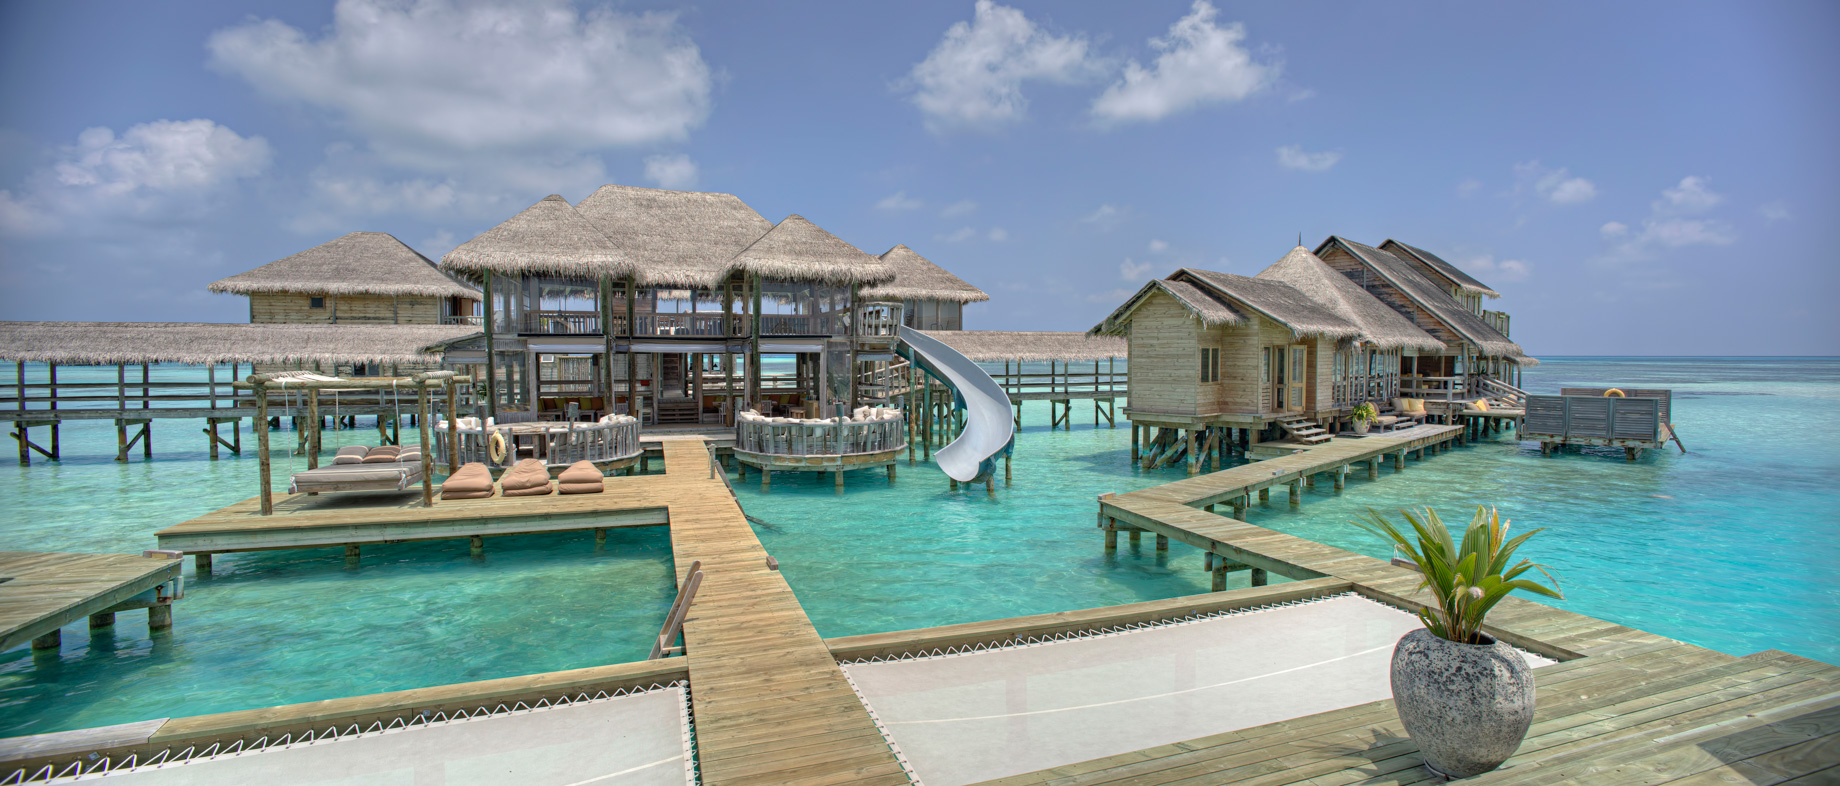 Gili Lankanfushi Resort – North Male Atoll, Maldives – The Private Reserve Boardwalk